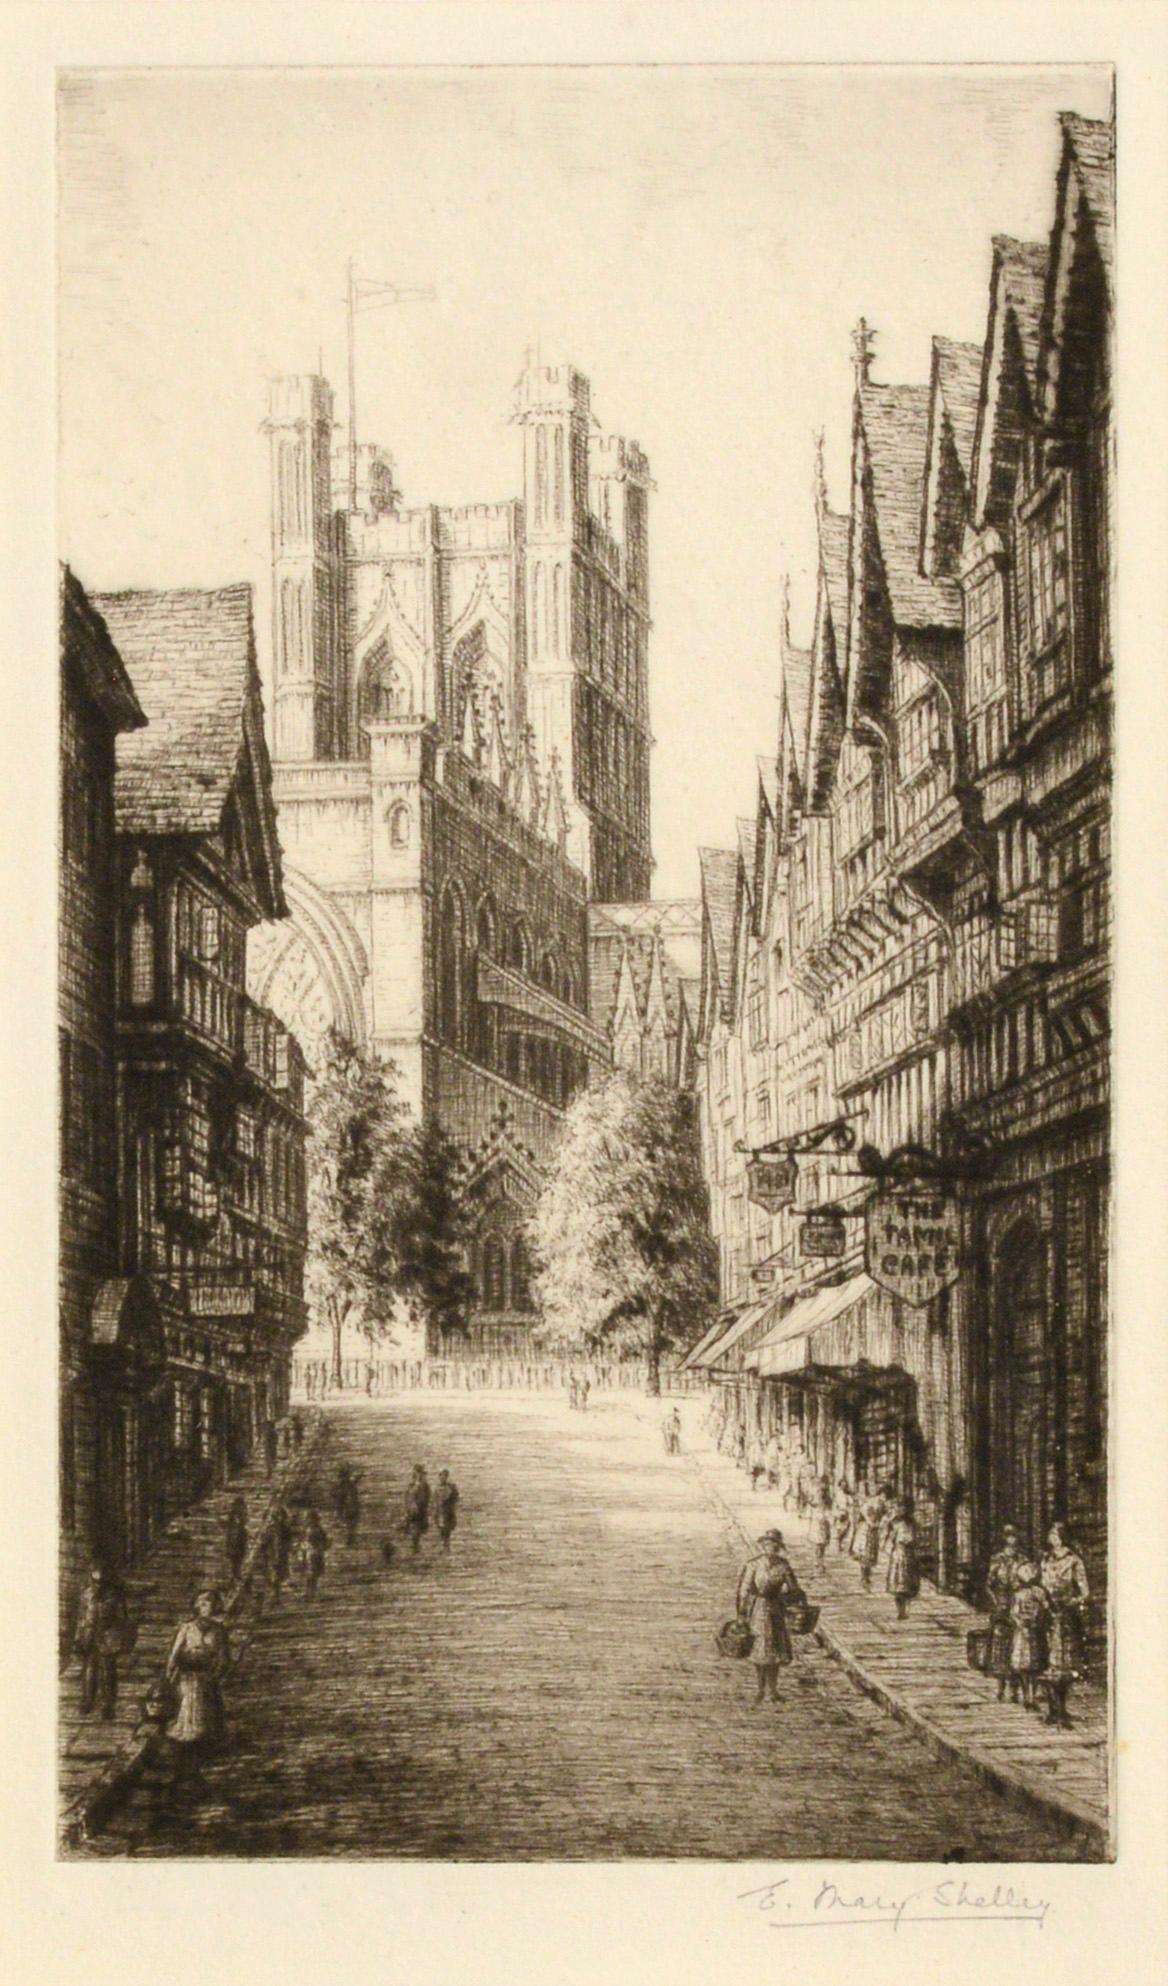 Britische Straßenszene des frühen 20. Jahrhunderts – Figurative Landschaftsradierung aus den 1920er Jahren – Print von E. Mary Shelley